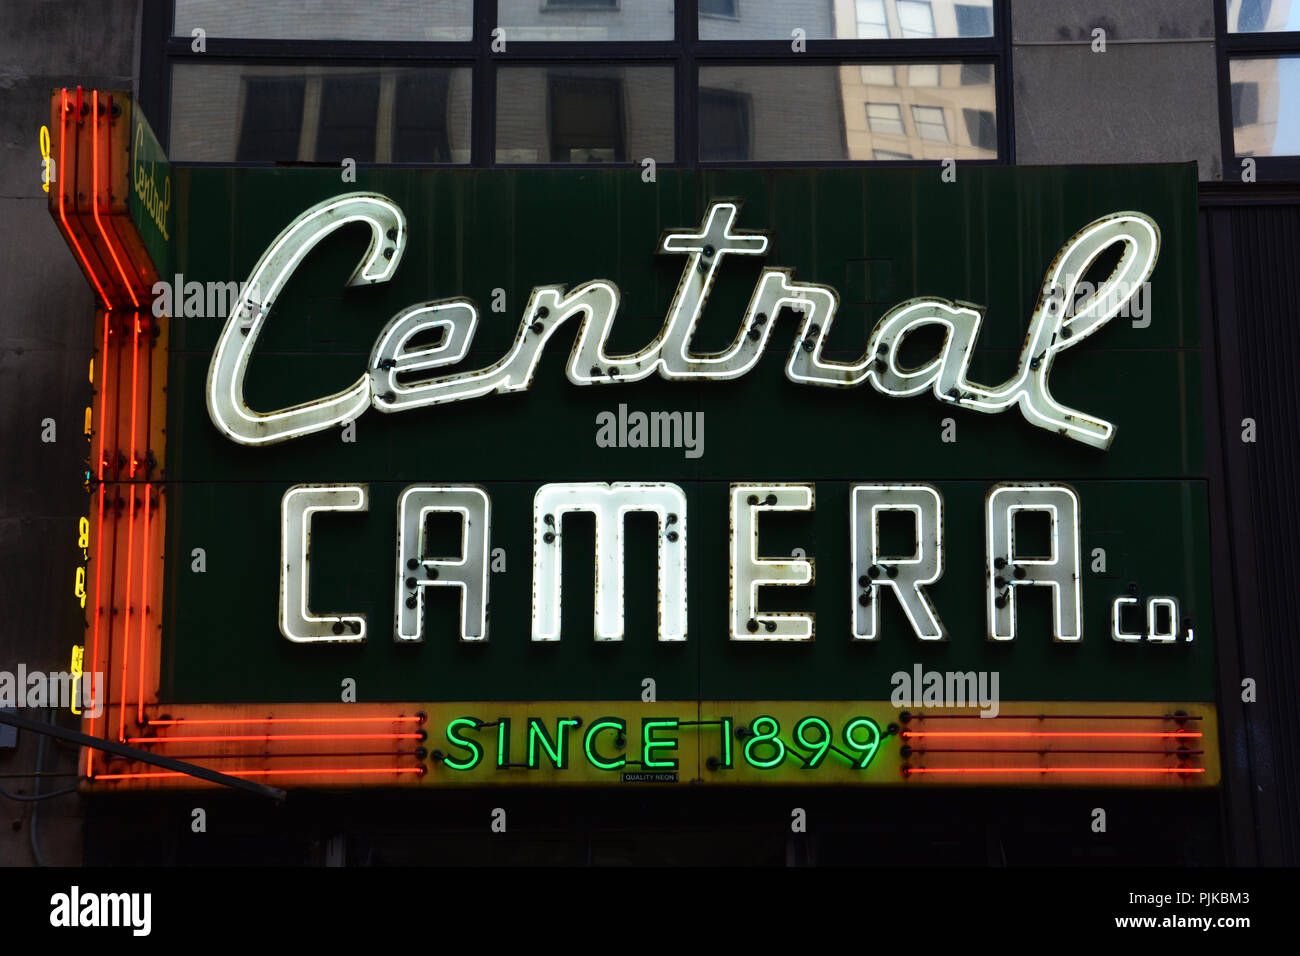 Fotocamera centrale ha venduto attrezzature fotografiche e servizi in Chicago Loop del Sud dal 1899 ed è la città più antica del negozio della fotocamera. Foto Stock